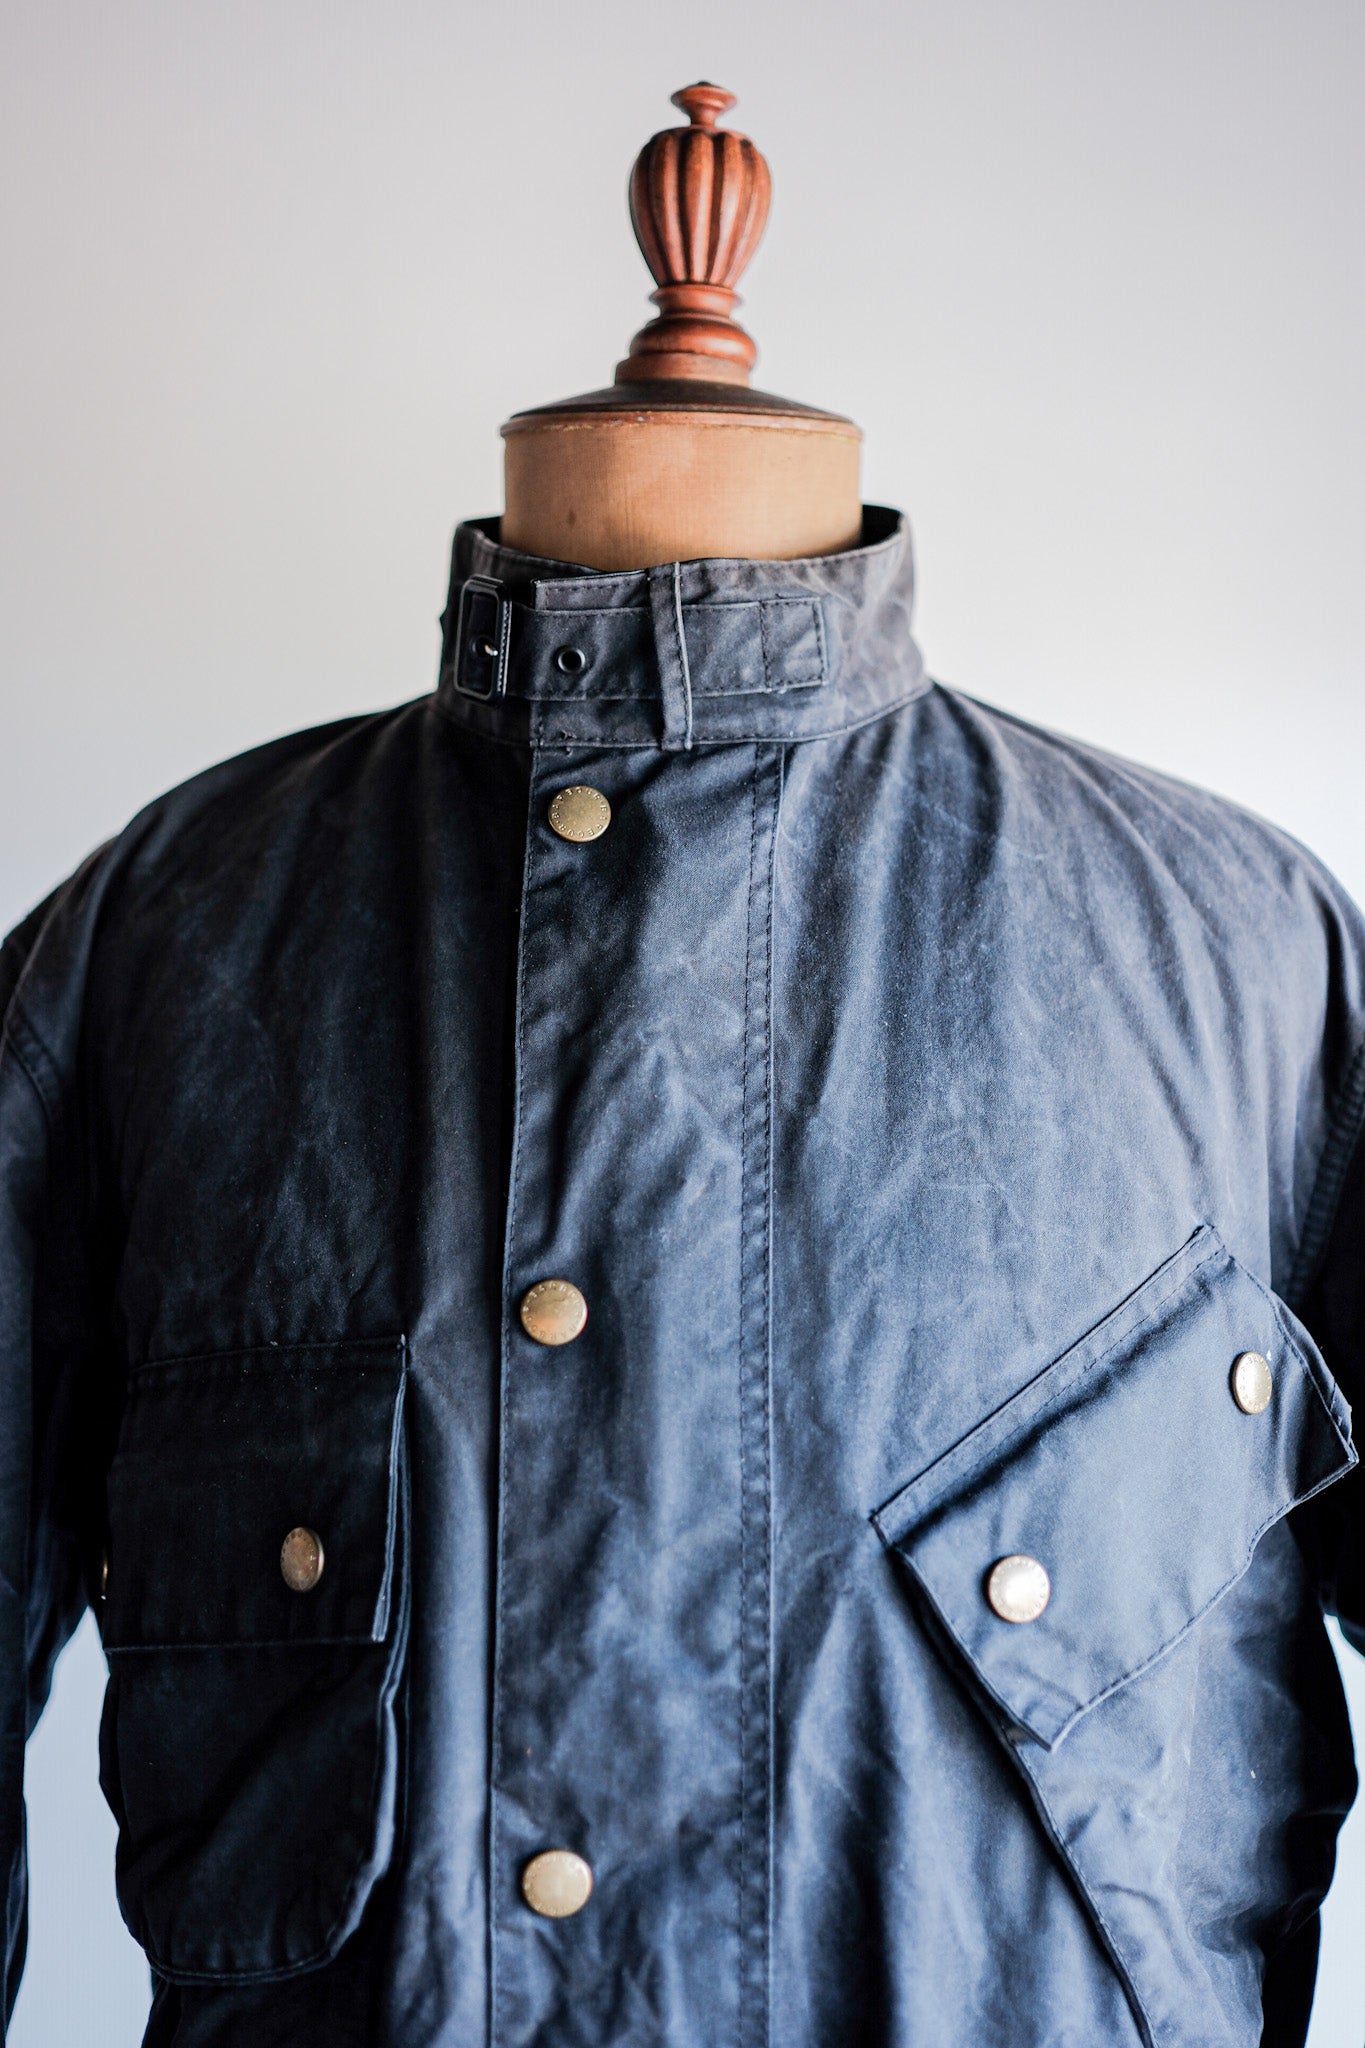 [〜90年代]老式巴爾巴爾“信標夾克” 3 Crest“不尋常的襯裡”